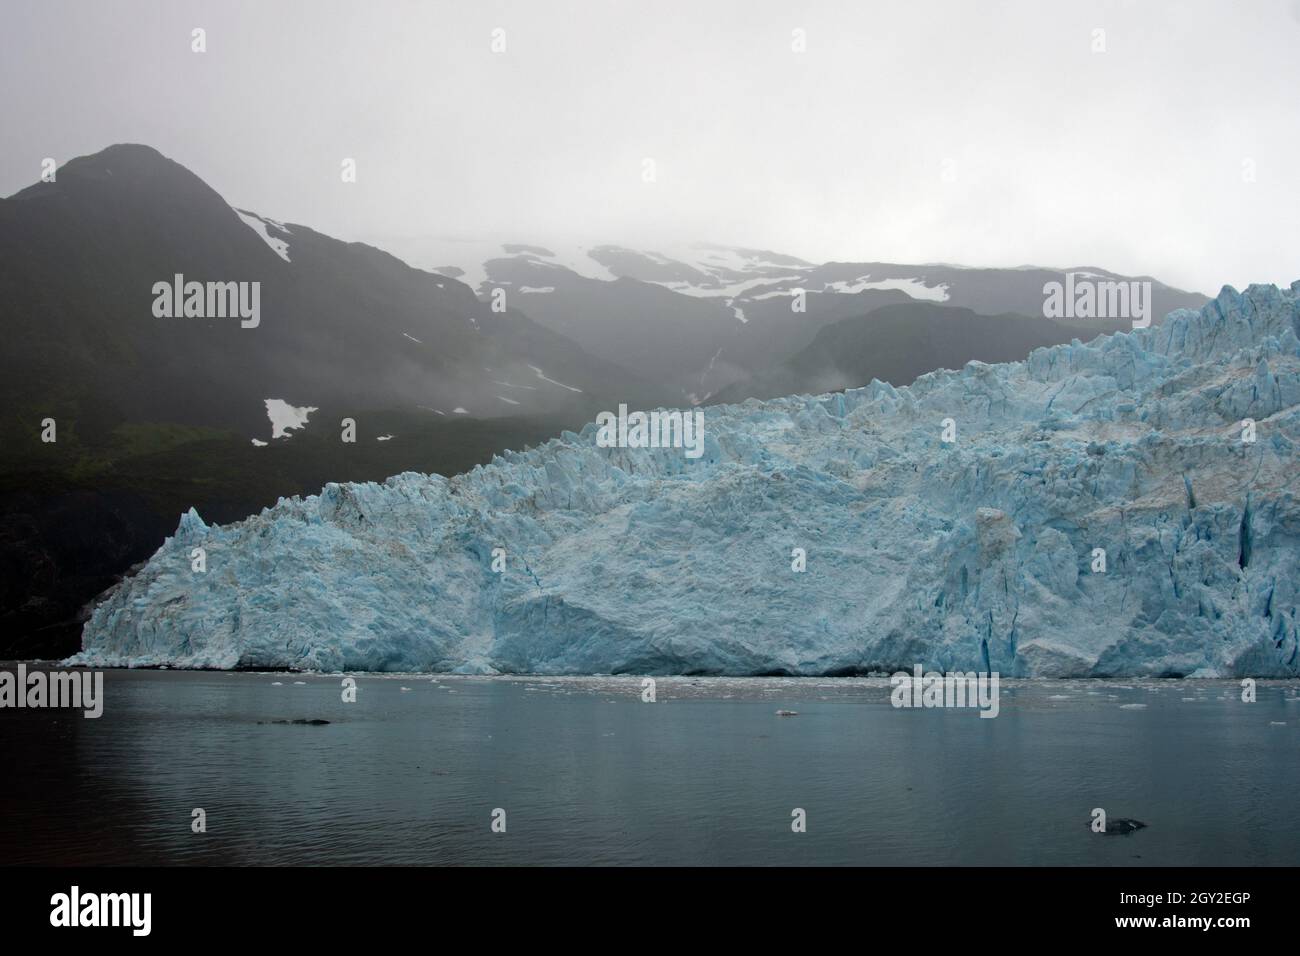 Parete di ghiaccio blu all'estremità anteriore del ghiacciaio di Aialik, della baia di Aialik, del parco nazionale di Kenai Fjords, Alaska, Stati Uniti Foto Stock